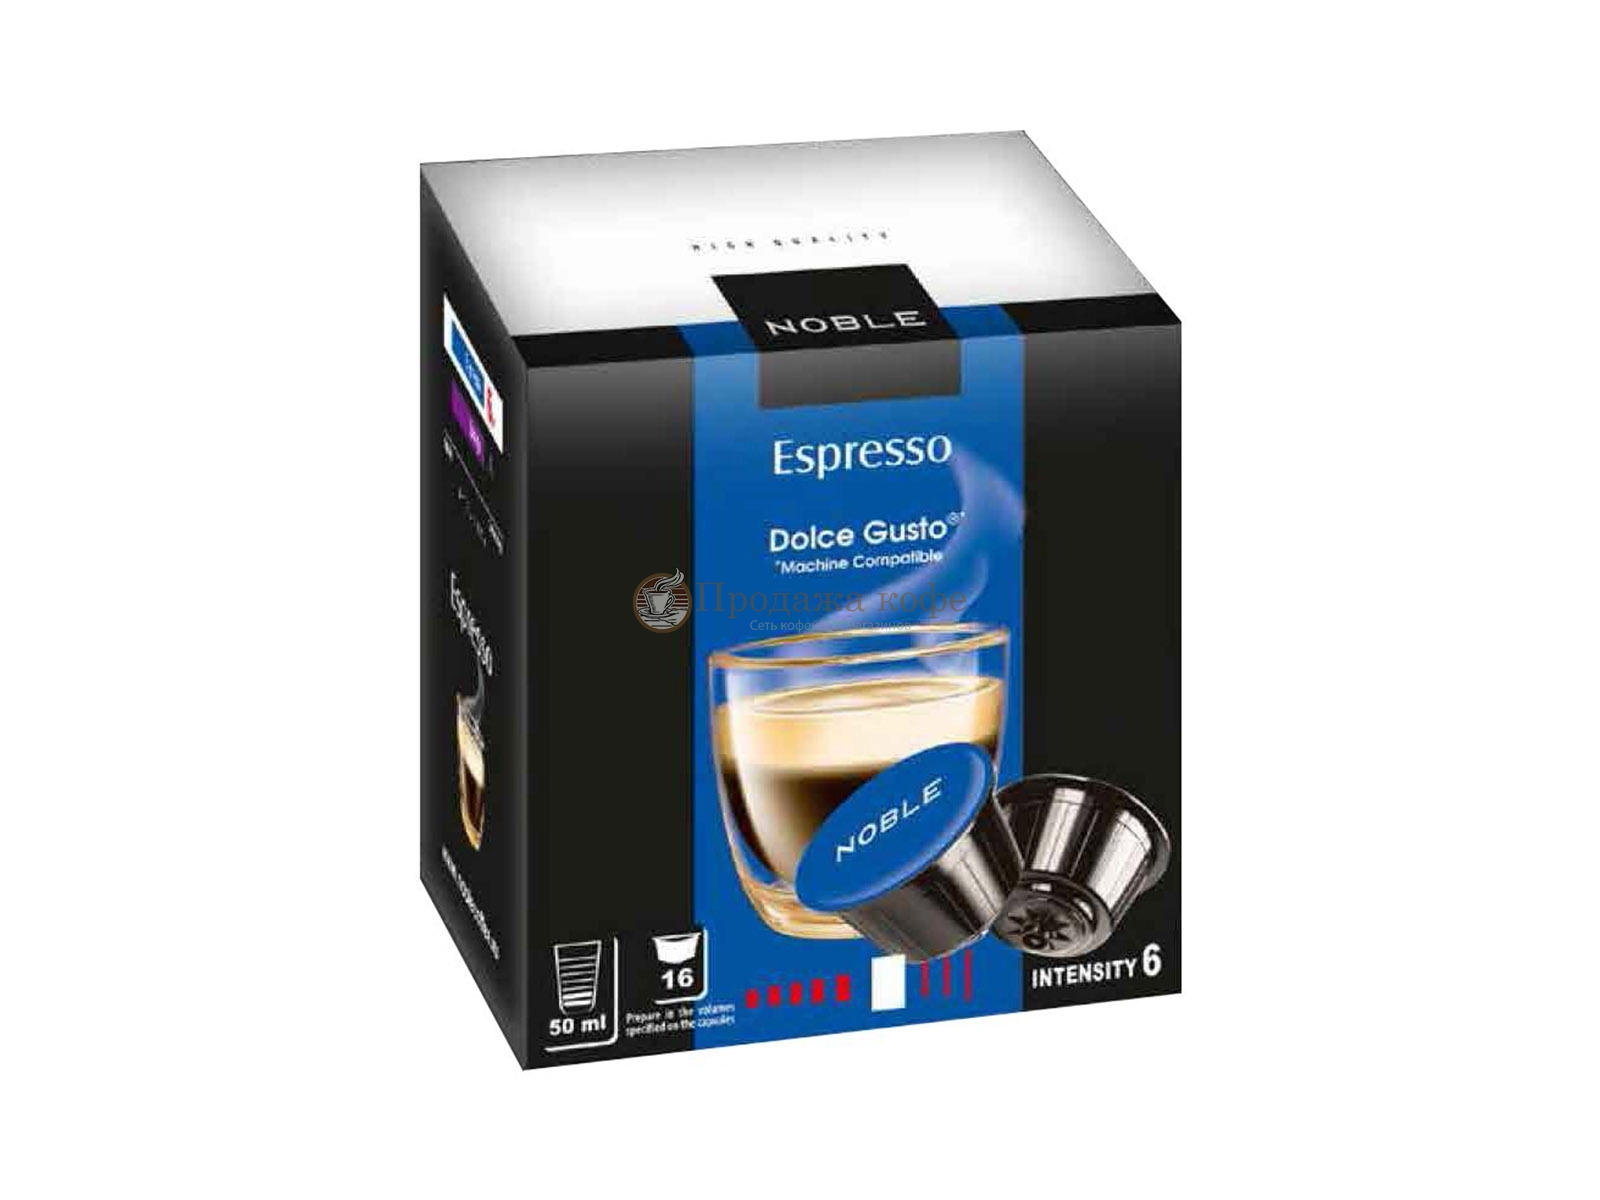 Кофе в капсулах Noble Espresso (Нобле Эспрессо), упаковка 16 капсул, формат Dolce Gusto (Дольче Густо)